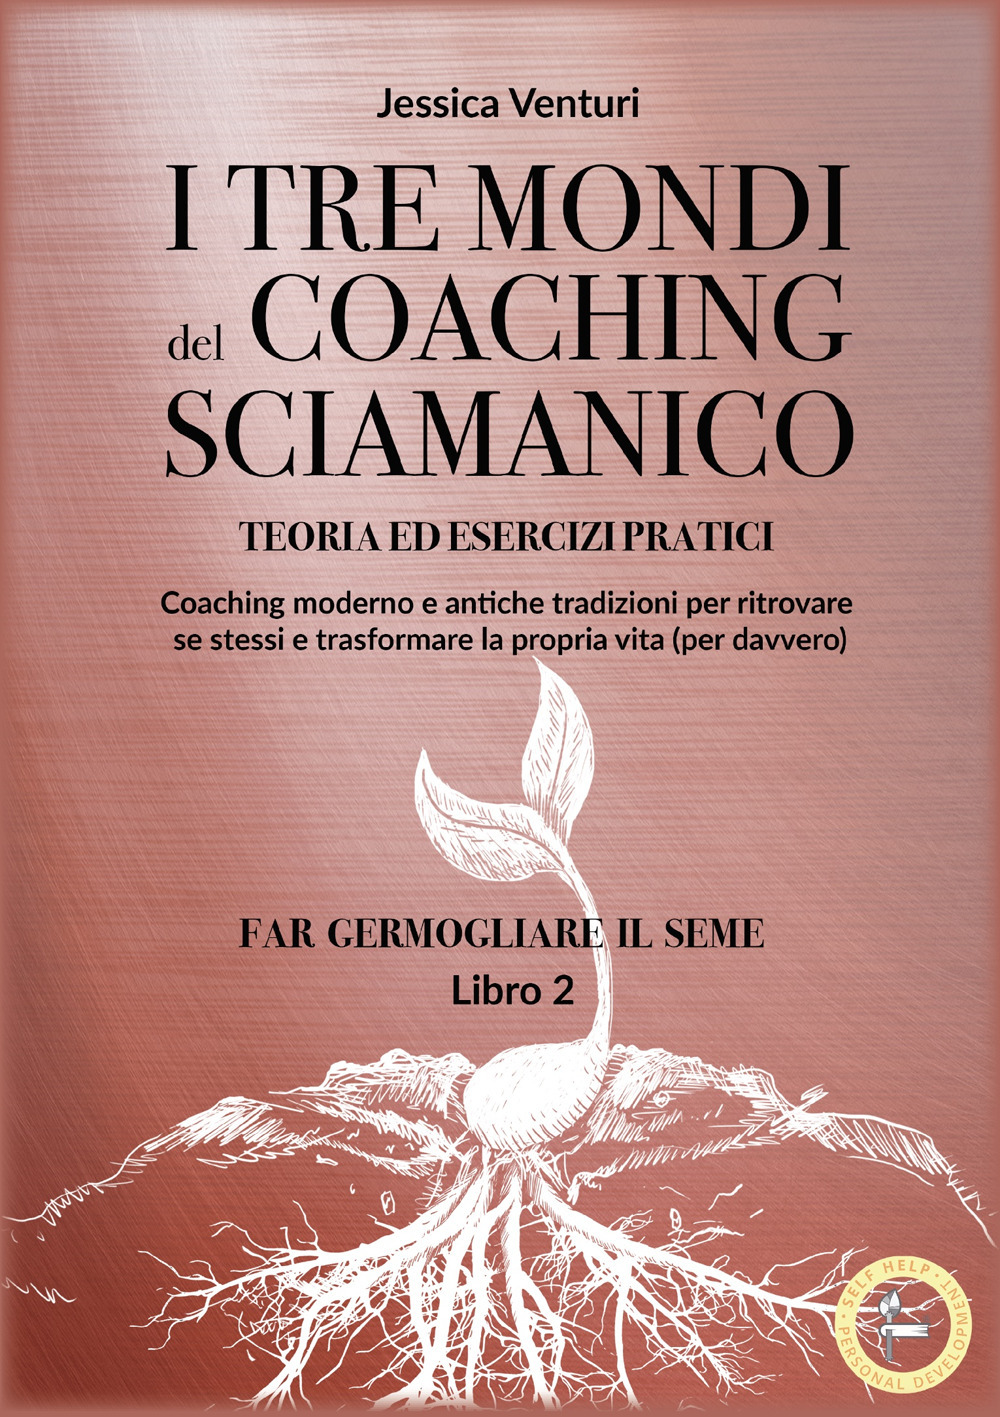 I tre mondi del coaching sciamanico. Vol. 2: Far germogliare il seme